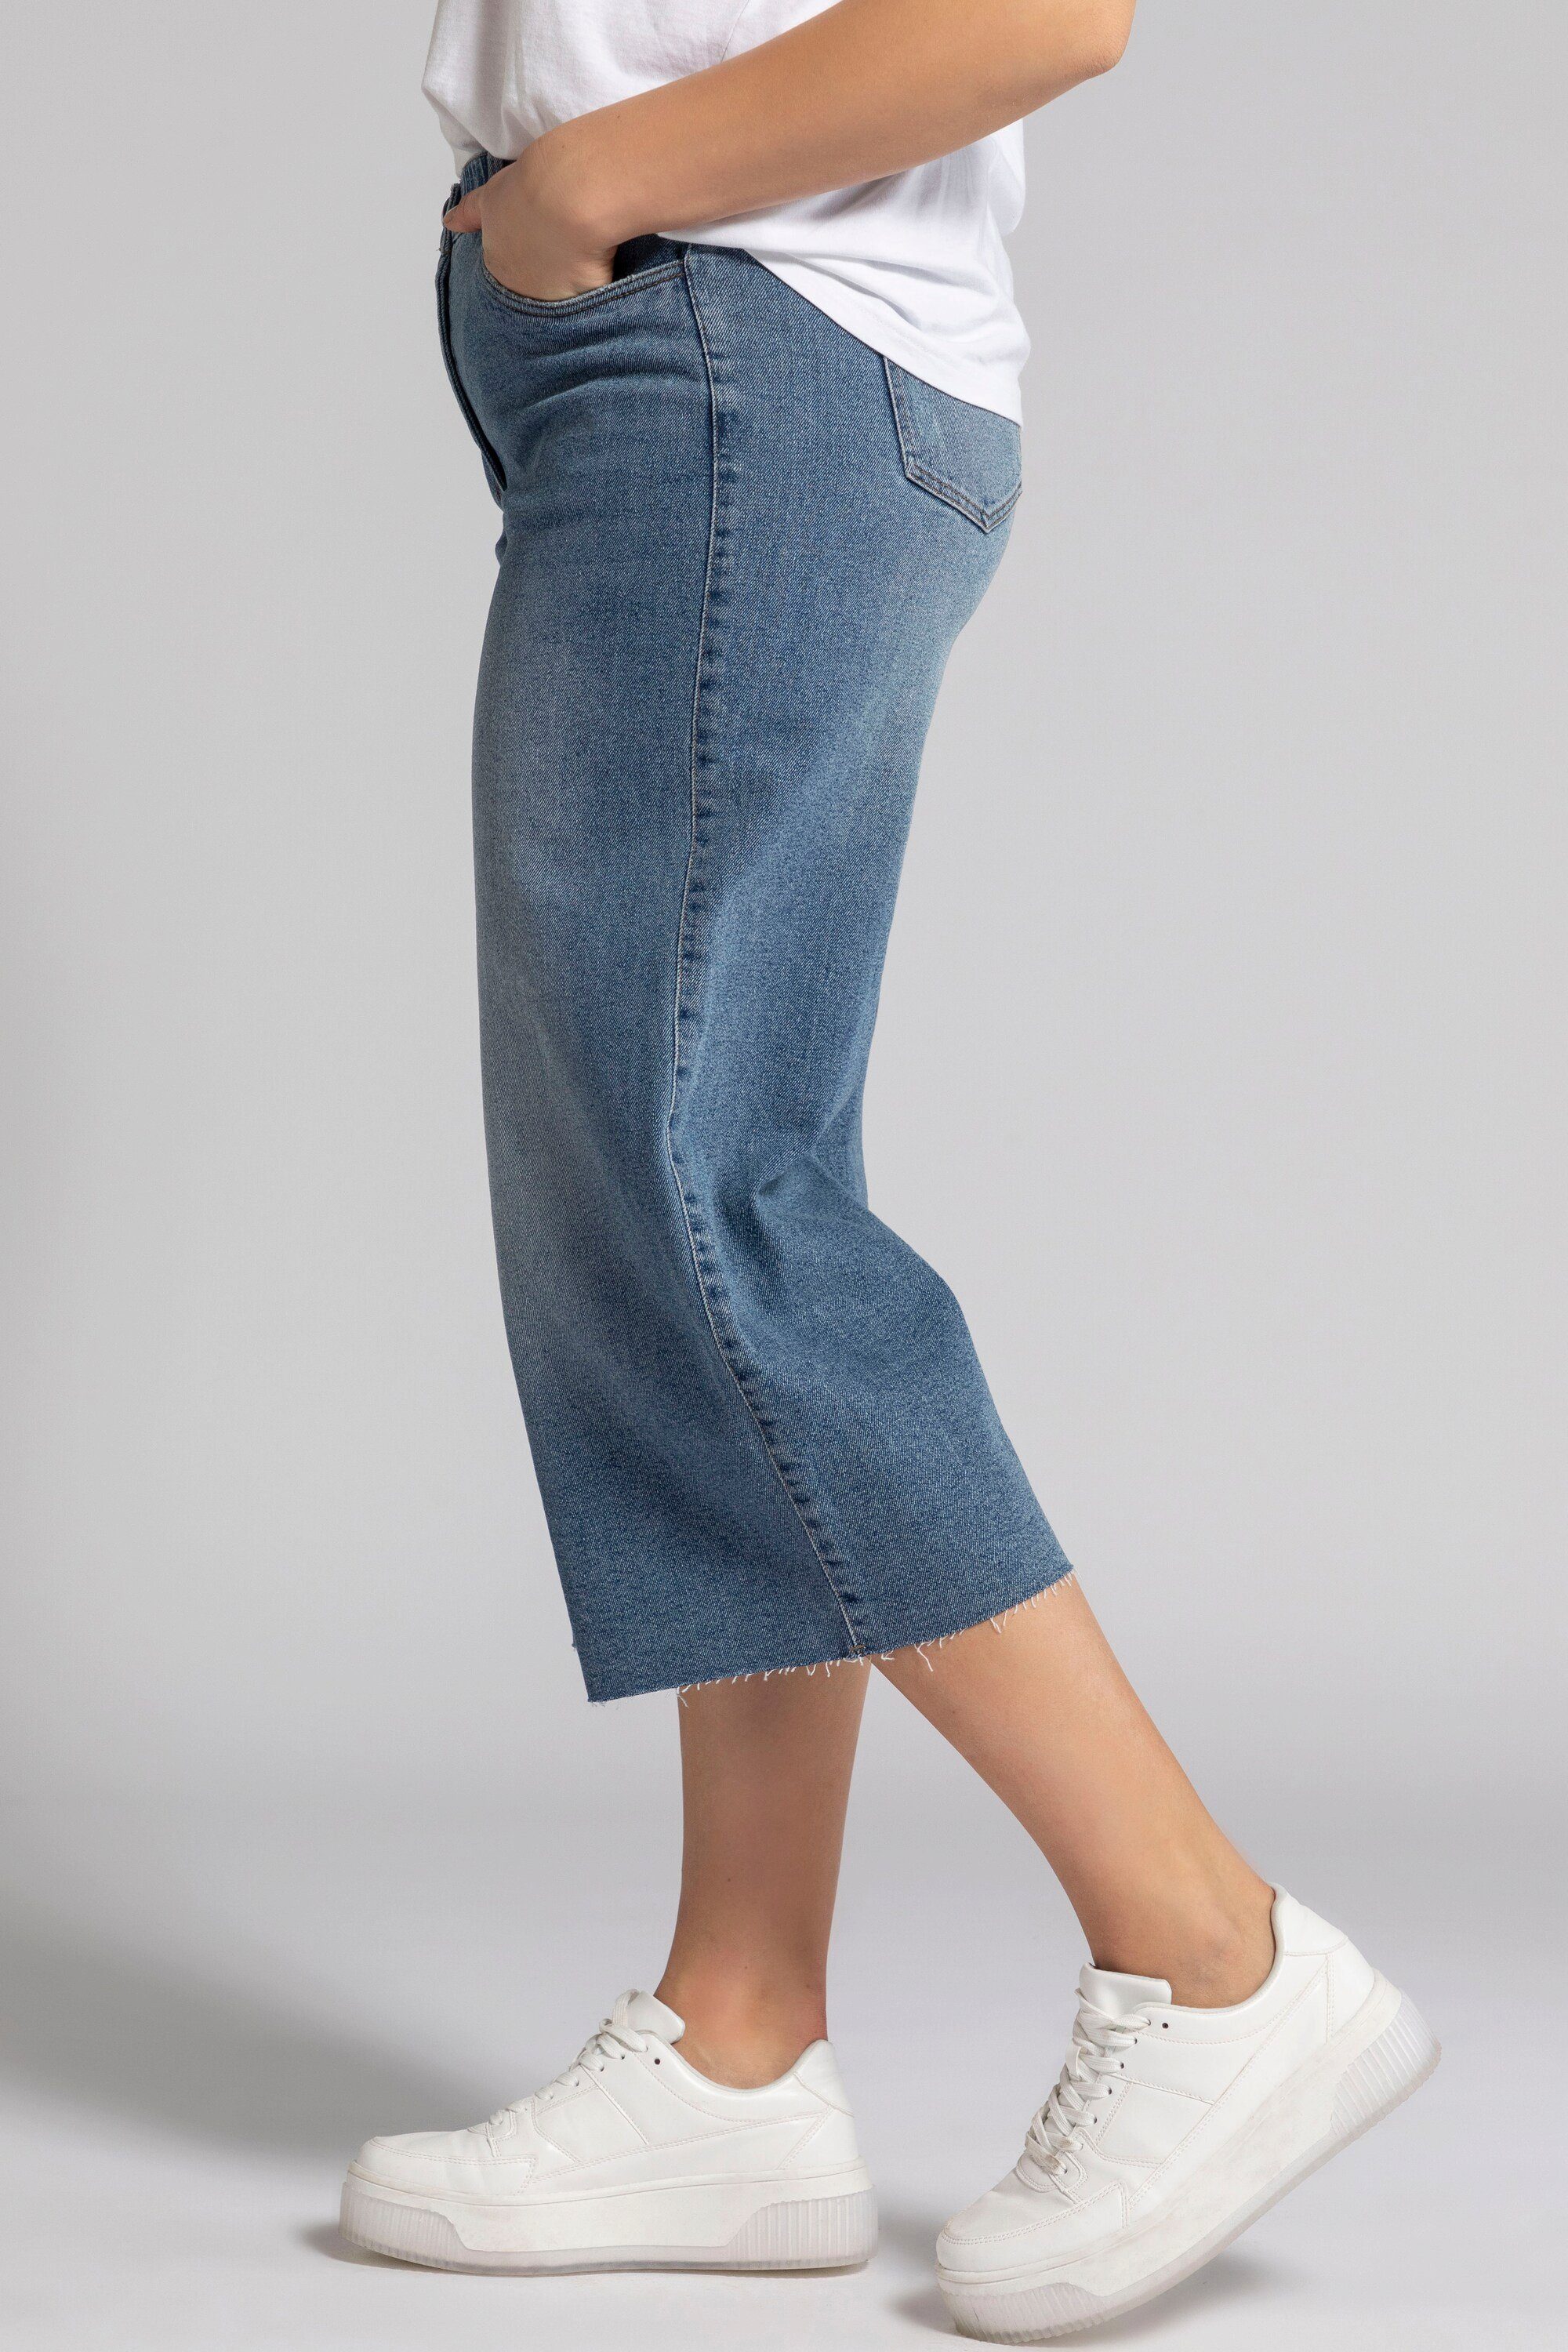 Elastikbund Bein Jeans weites Culottes Untold Studio Fransensaum Culotte